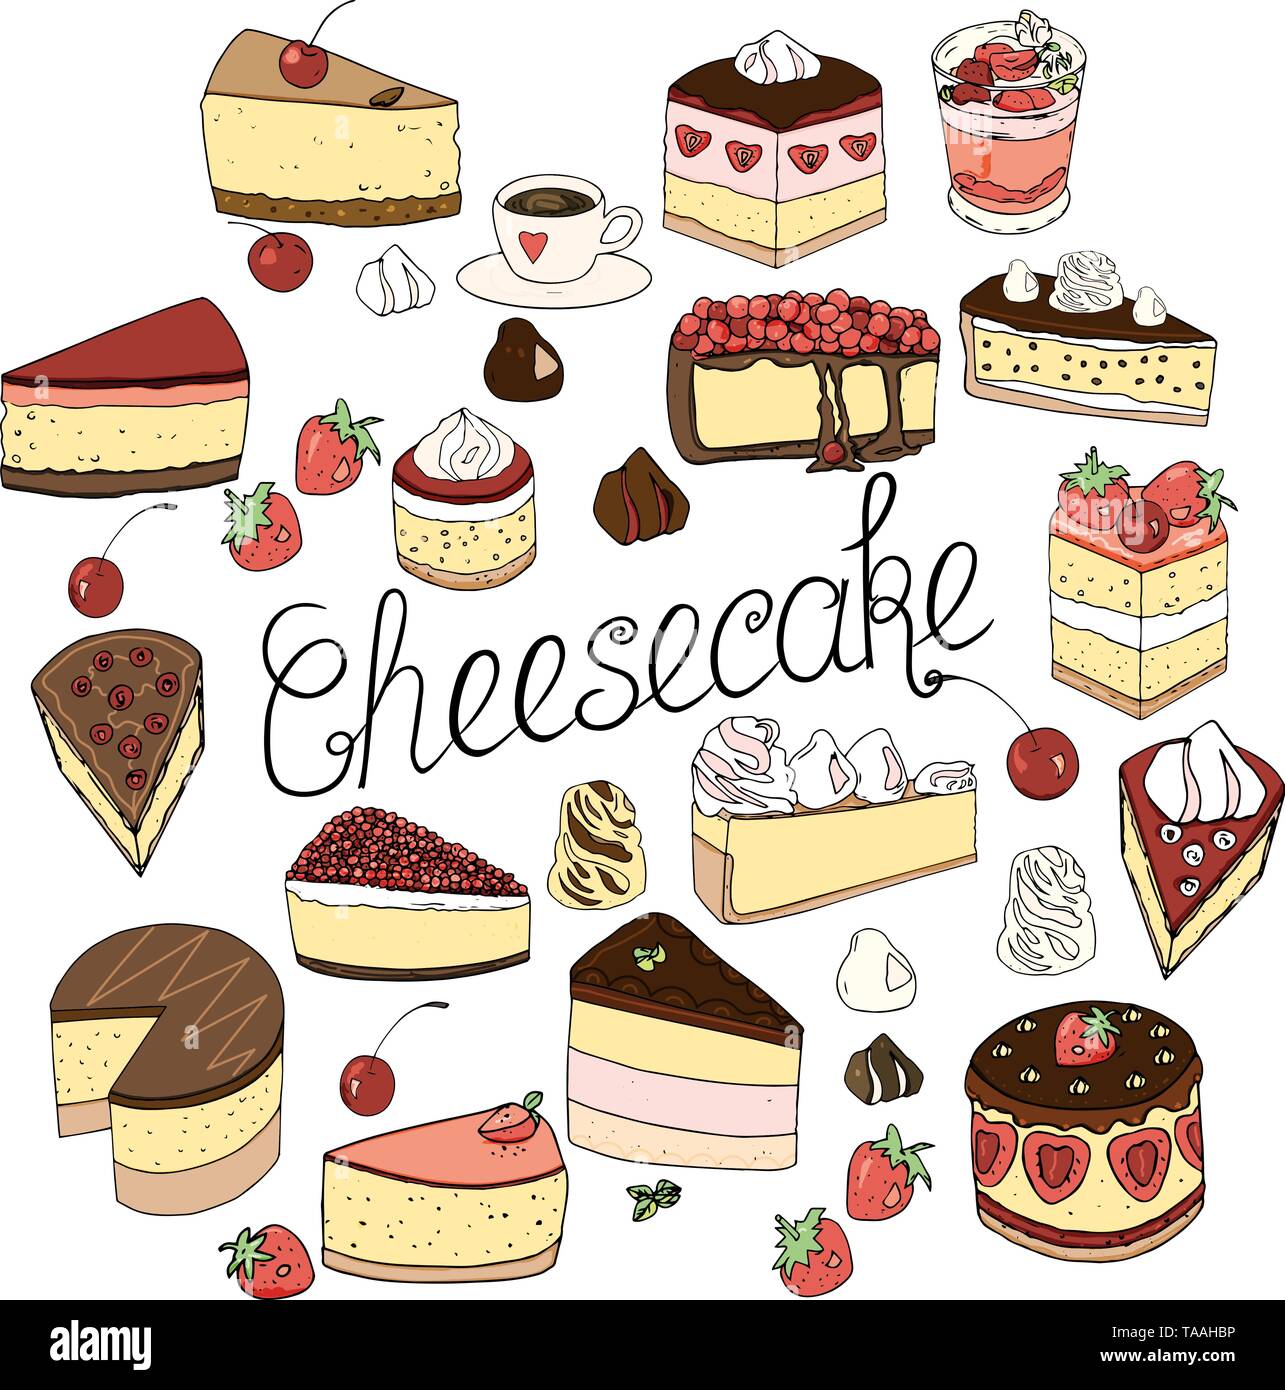 Un set di cheesecake è costituito da elementi di torte e pasticcini, isolato doodle set design decorazione e disegnati a mano nello stile di disegno naif. Illustrazione Vettoriale